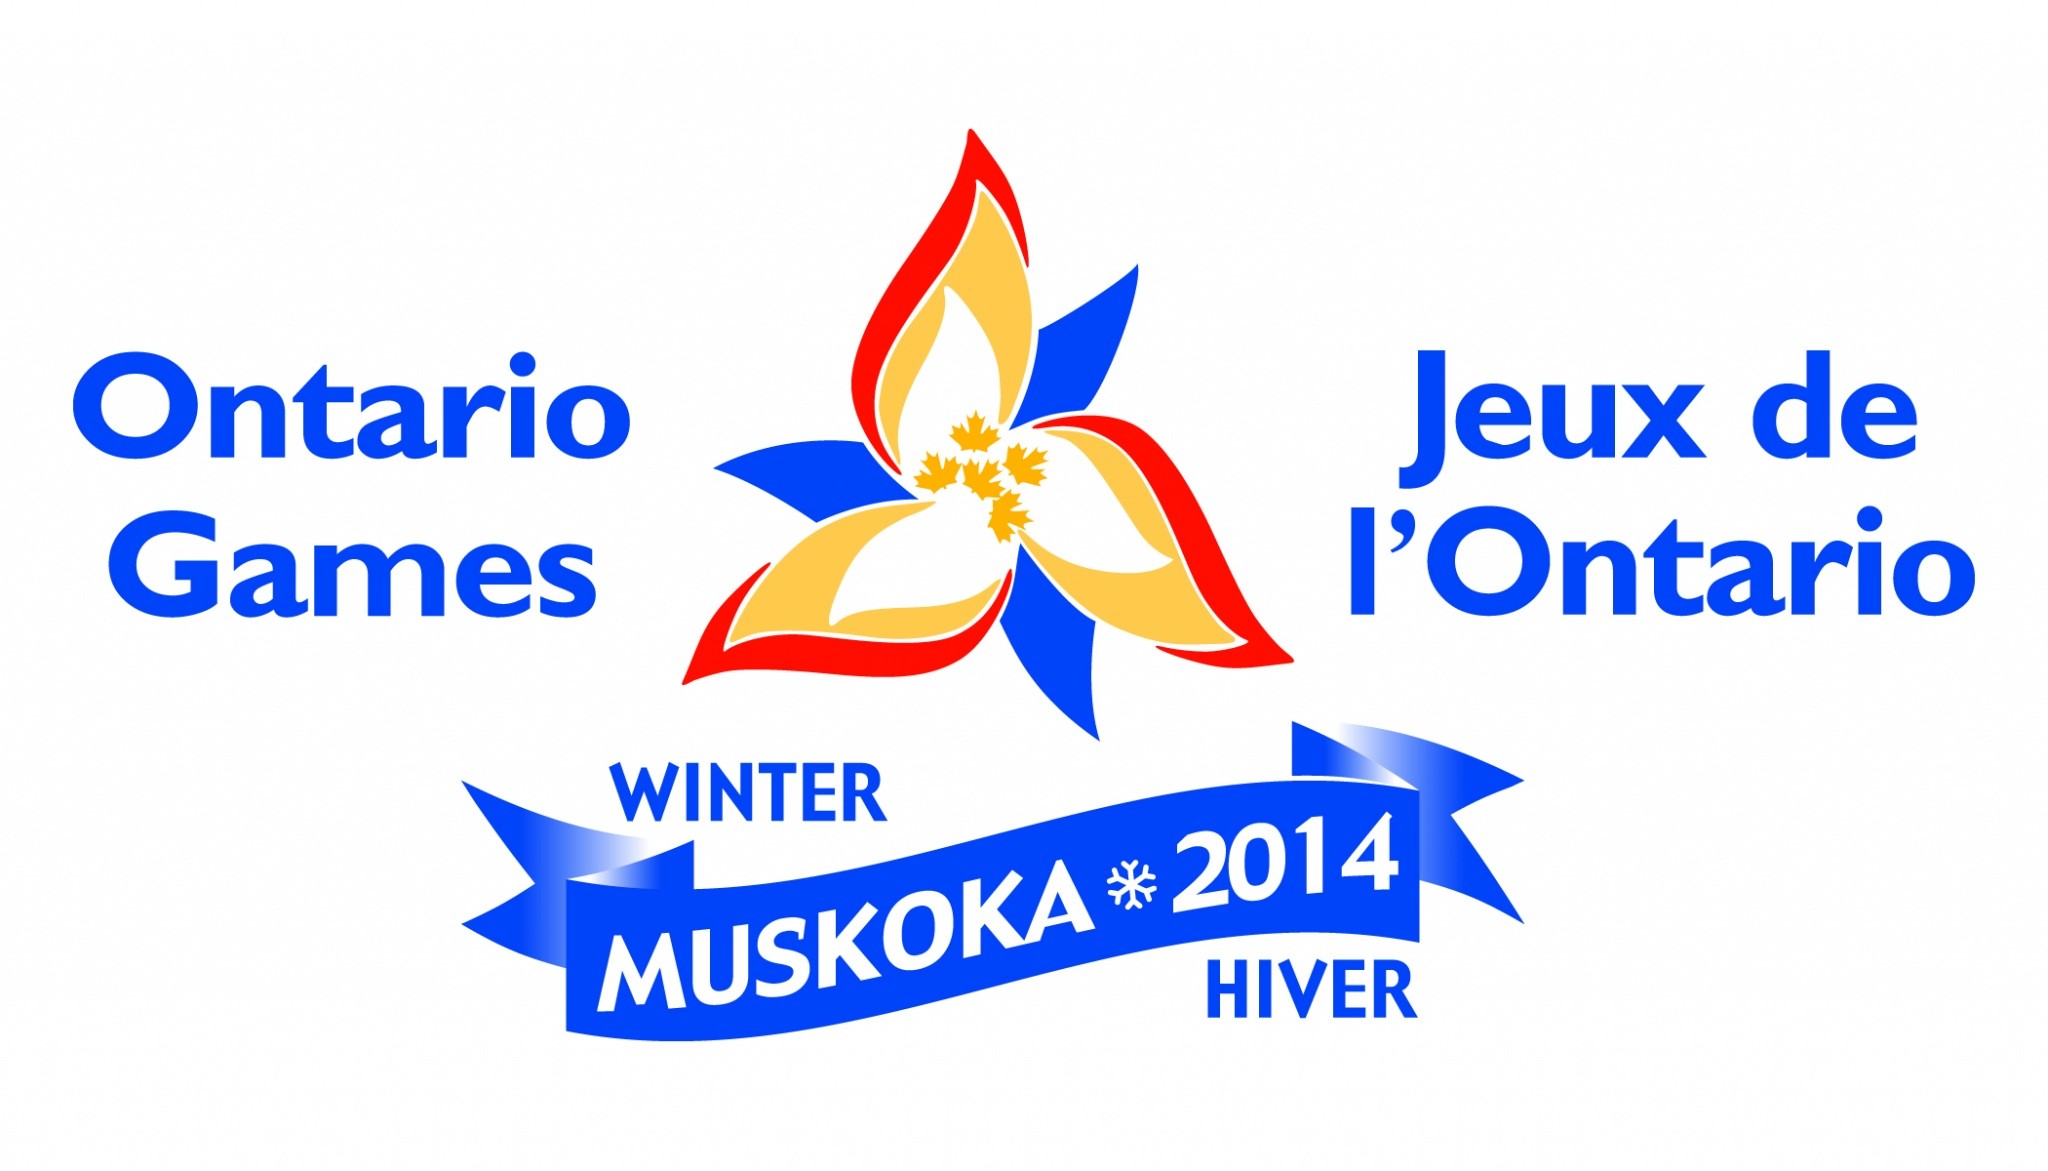 Mount St Louis Moonstone set to host Muskoka 2014 Ontario Winter Games! - Mount St. Louis Moonstone